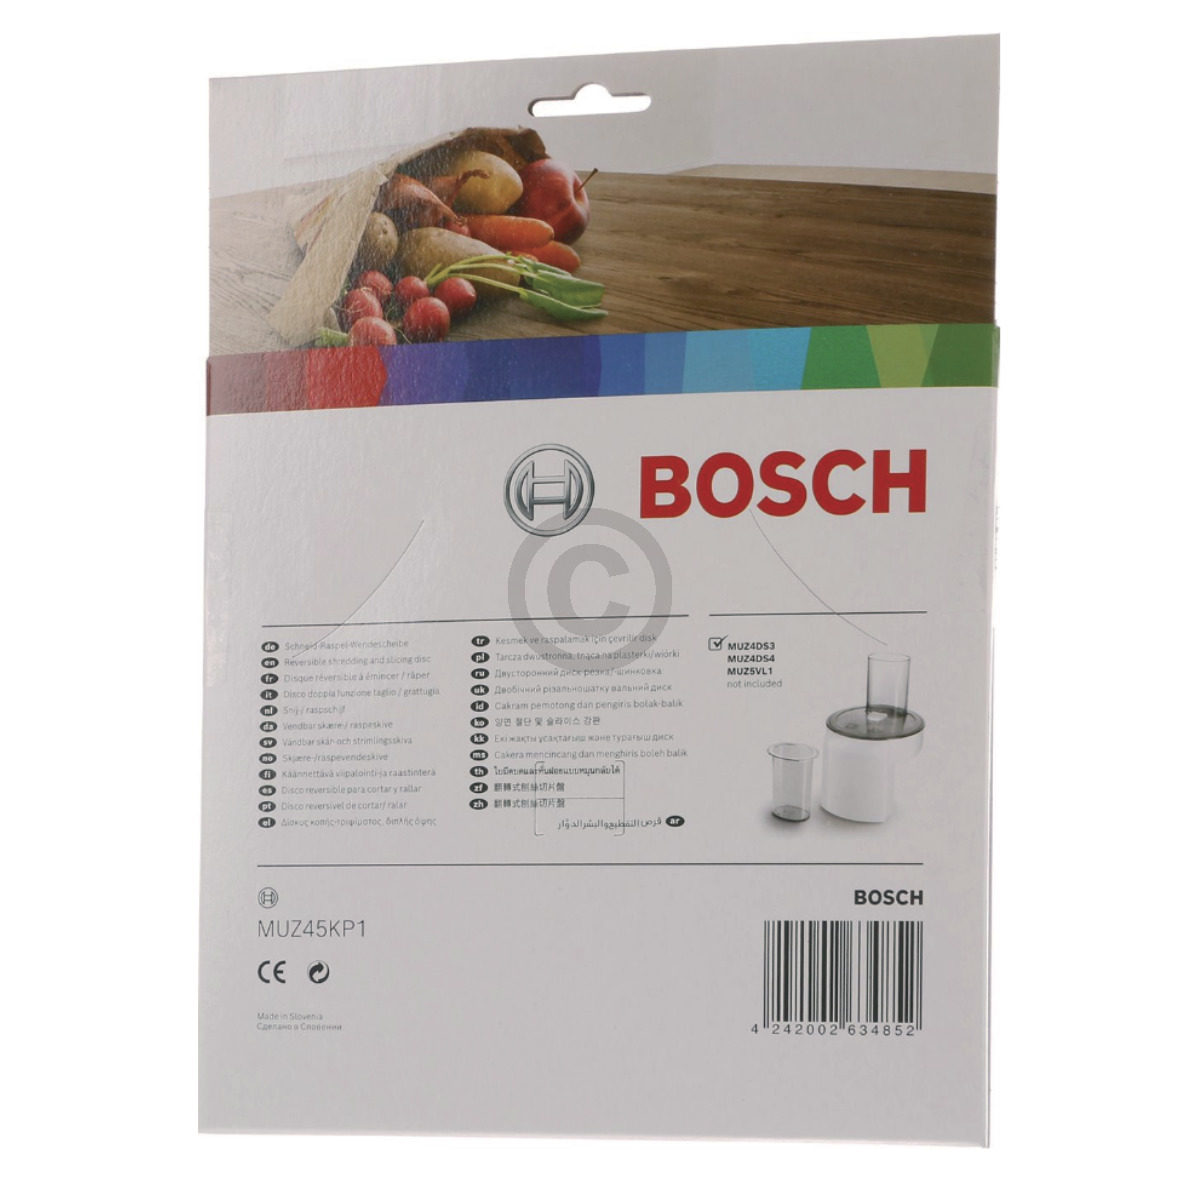 Raspelscheibe für Kartoffelpuffer Rösti BOSCH 12039341 in Durchlaufschnitzler Küchenmaschine